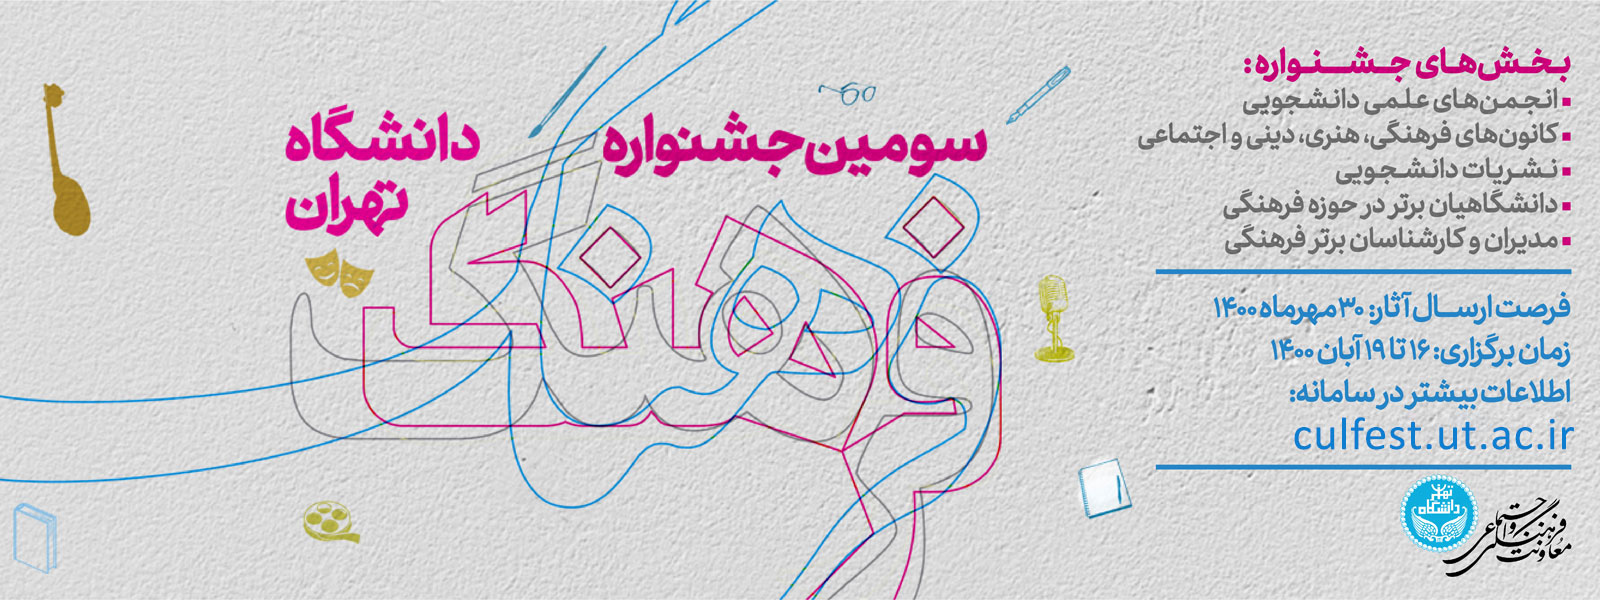 آغاز ارسال آثار به سومین جشنواره فرهنگ دانشگاه تهران/ برگزار جشنواره در آبان ماه